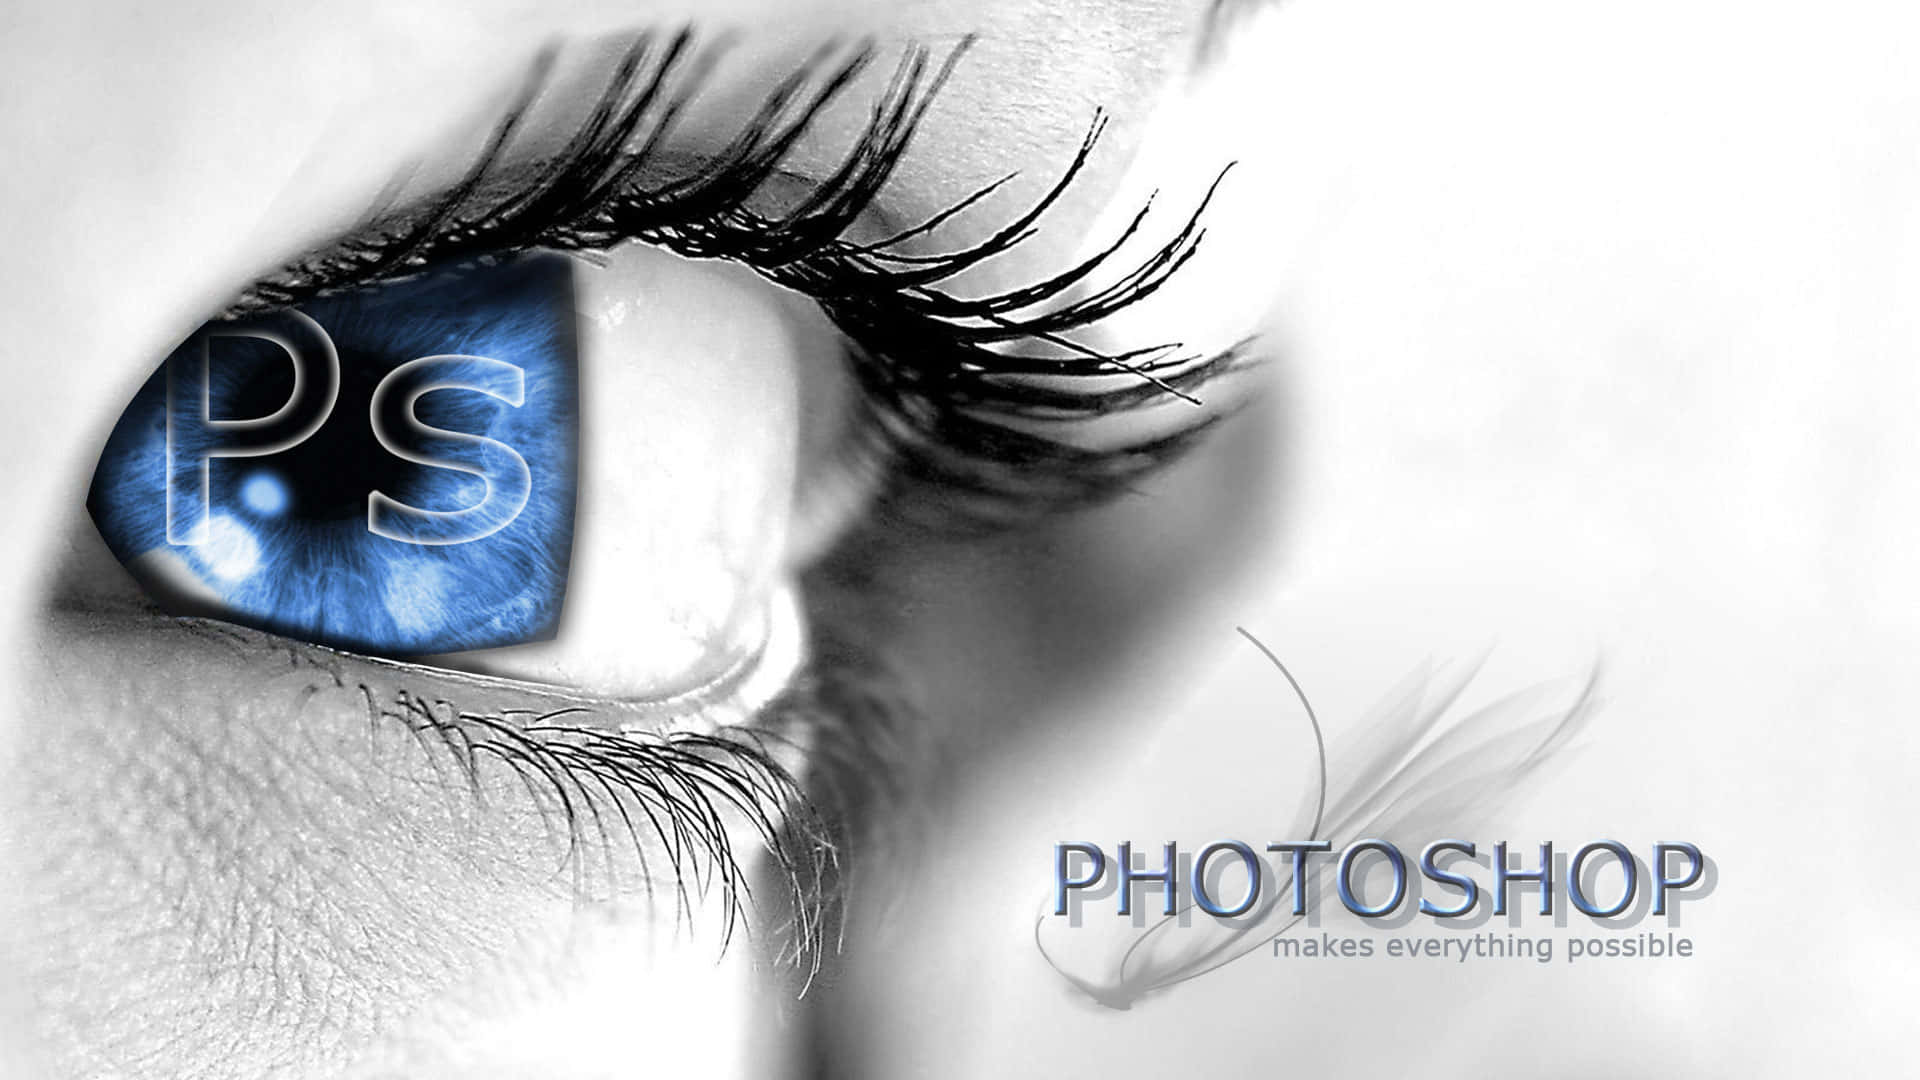 Download Photoshop Logo On A Blue Eye Wallpaper 